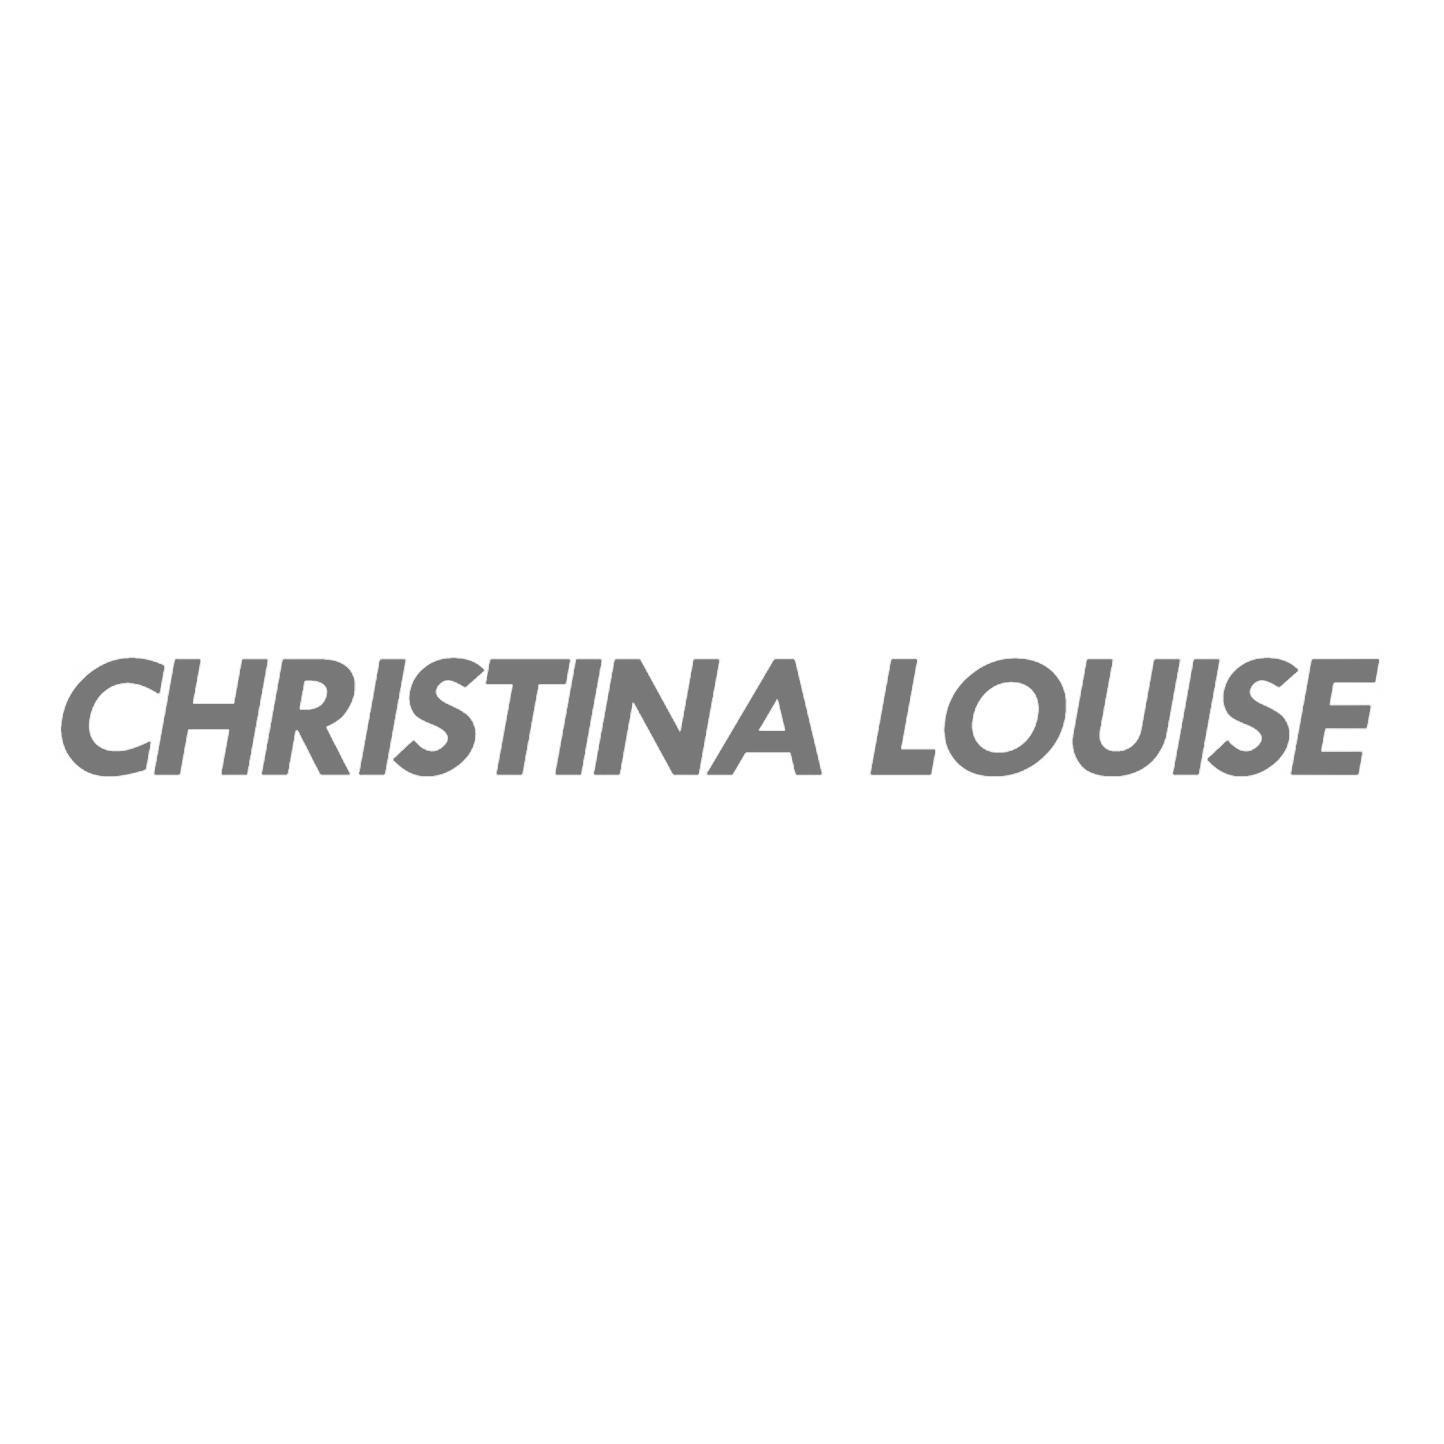 CHRISTINA LOUISE